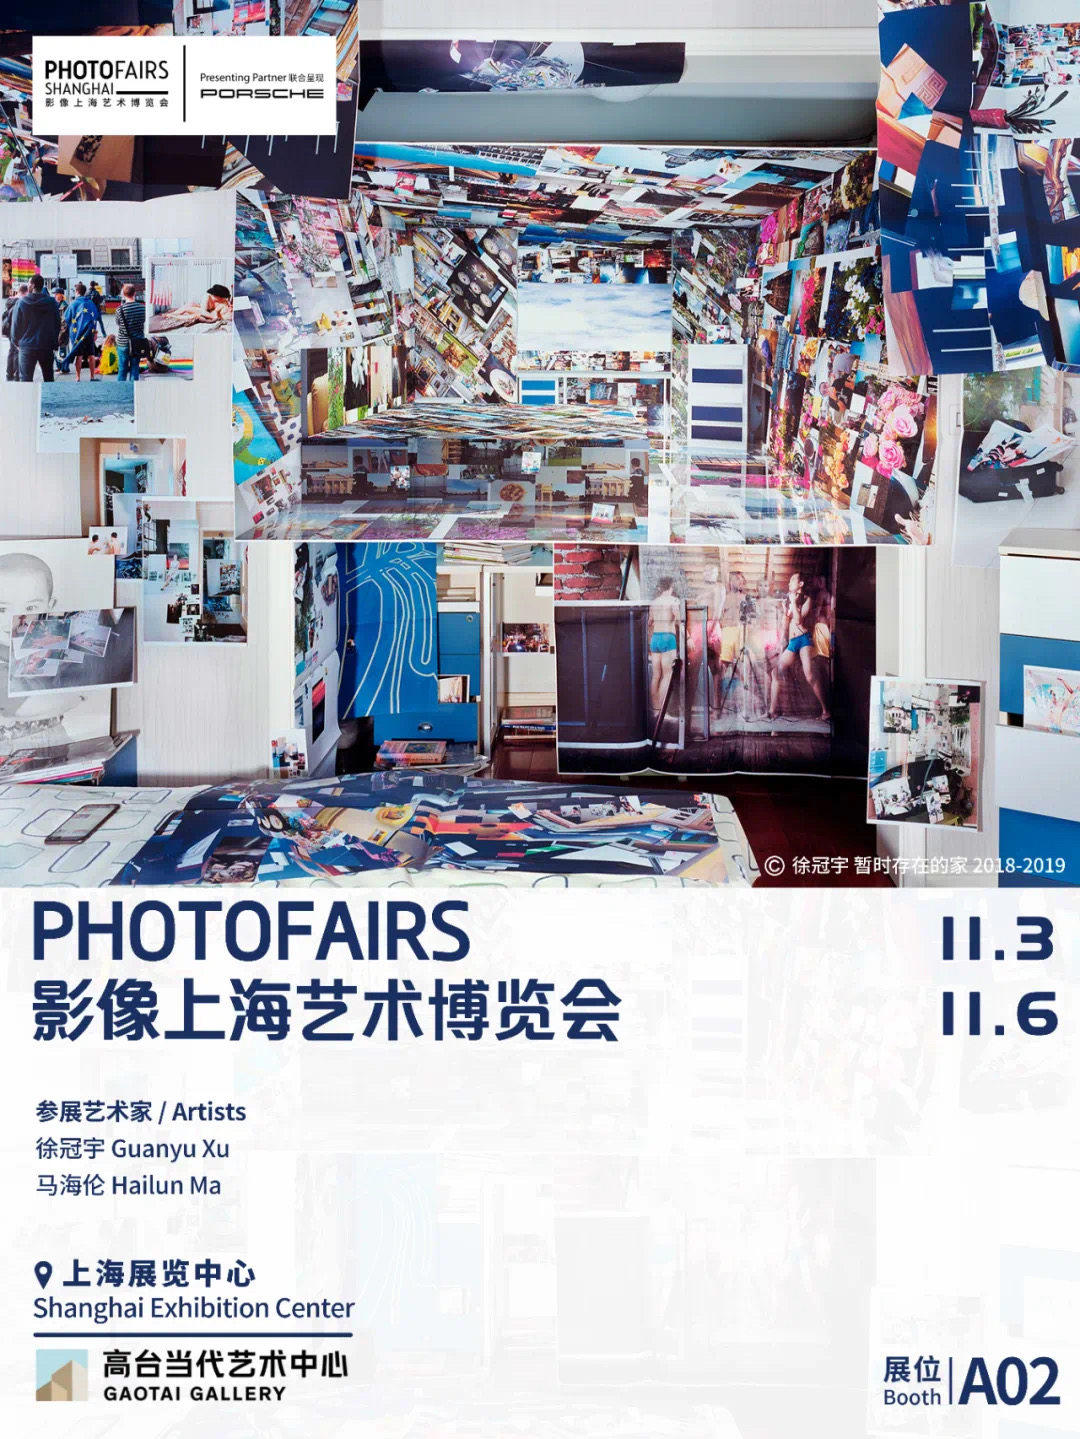 影像上海艺术博览会 - A02